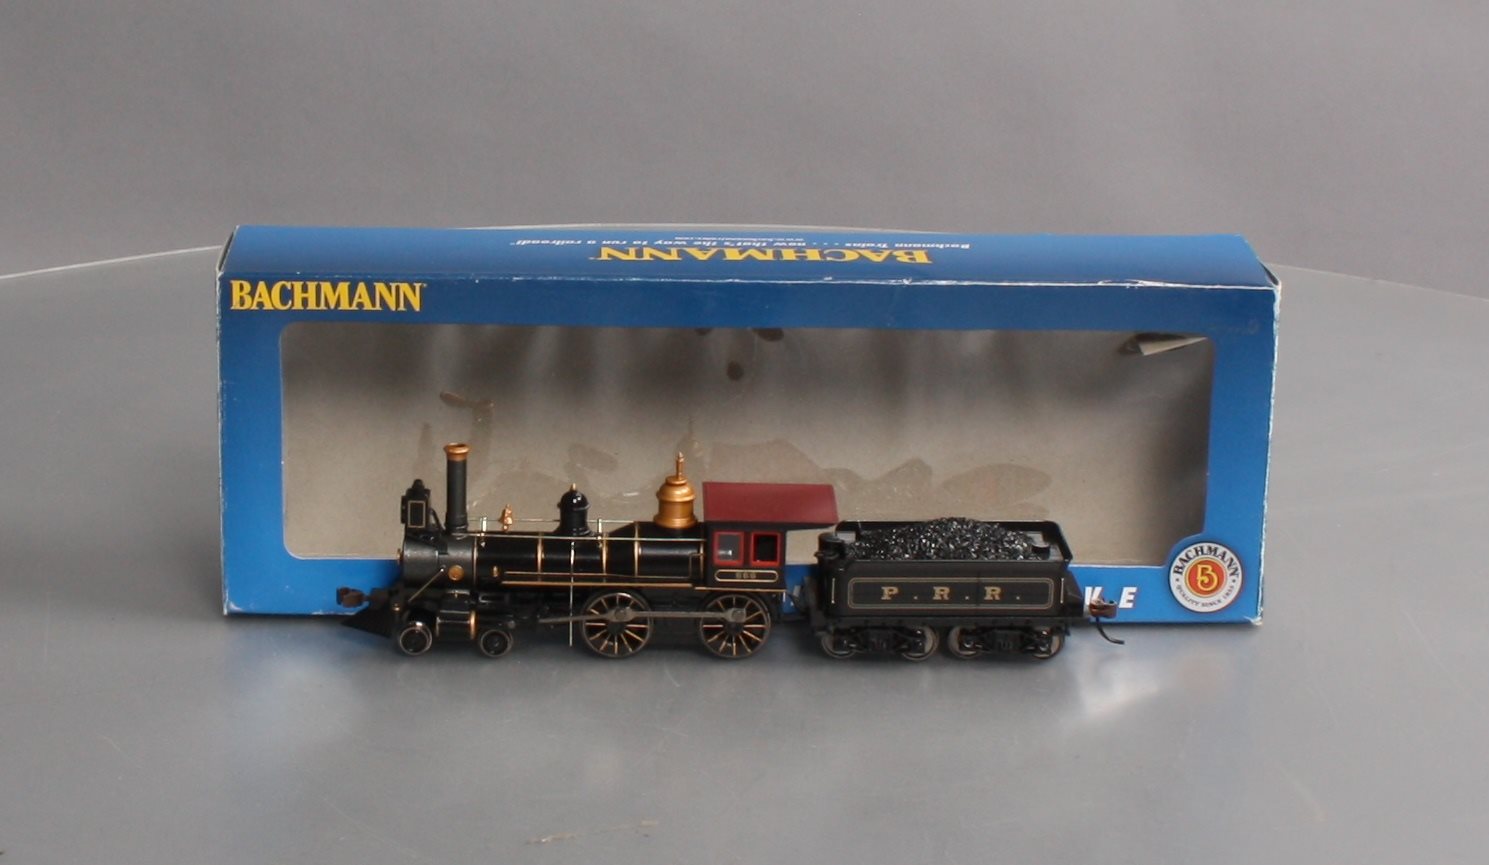 春夏秋冬おさんぽシリーズ Ｅ Bachmann Industries 4-4-0 American Steam DCC Ready  Pennsylvania with C